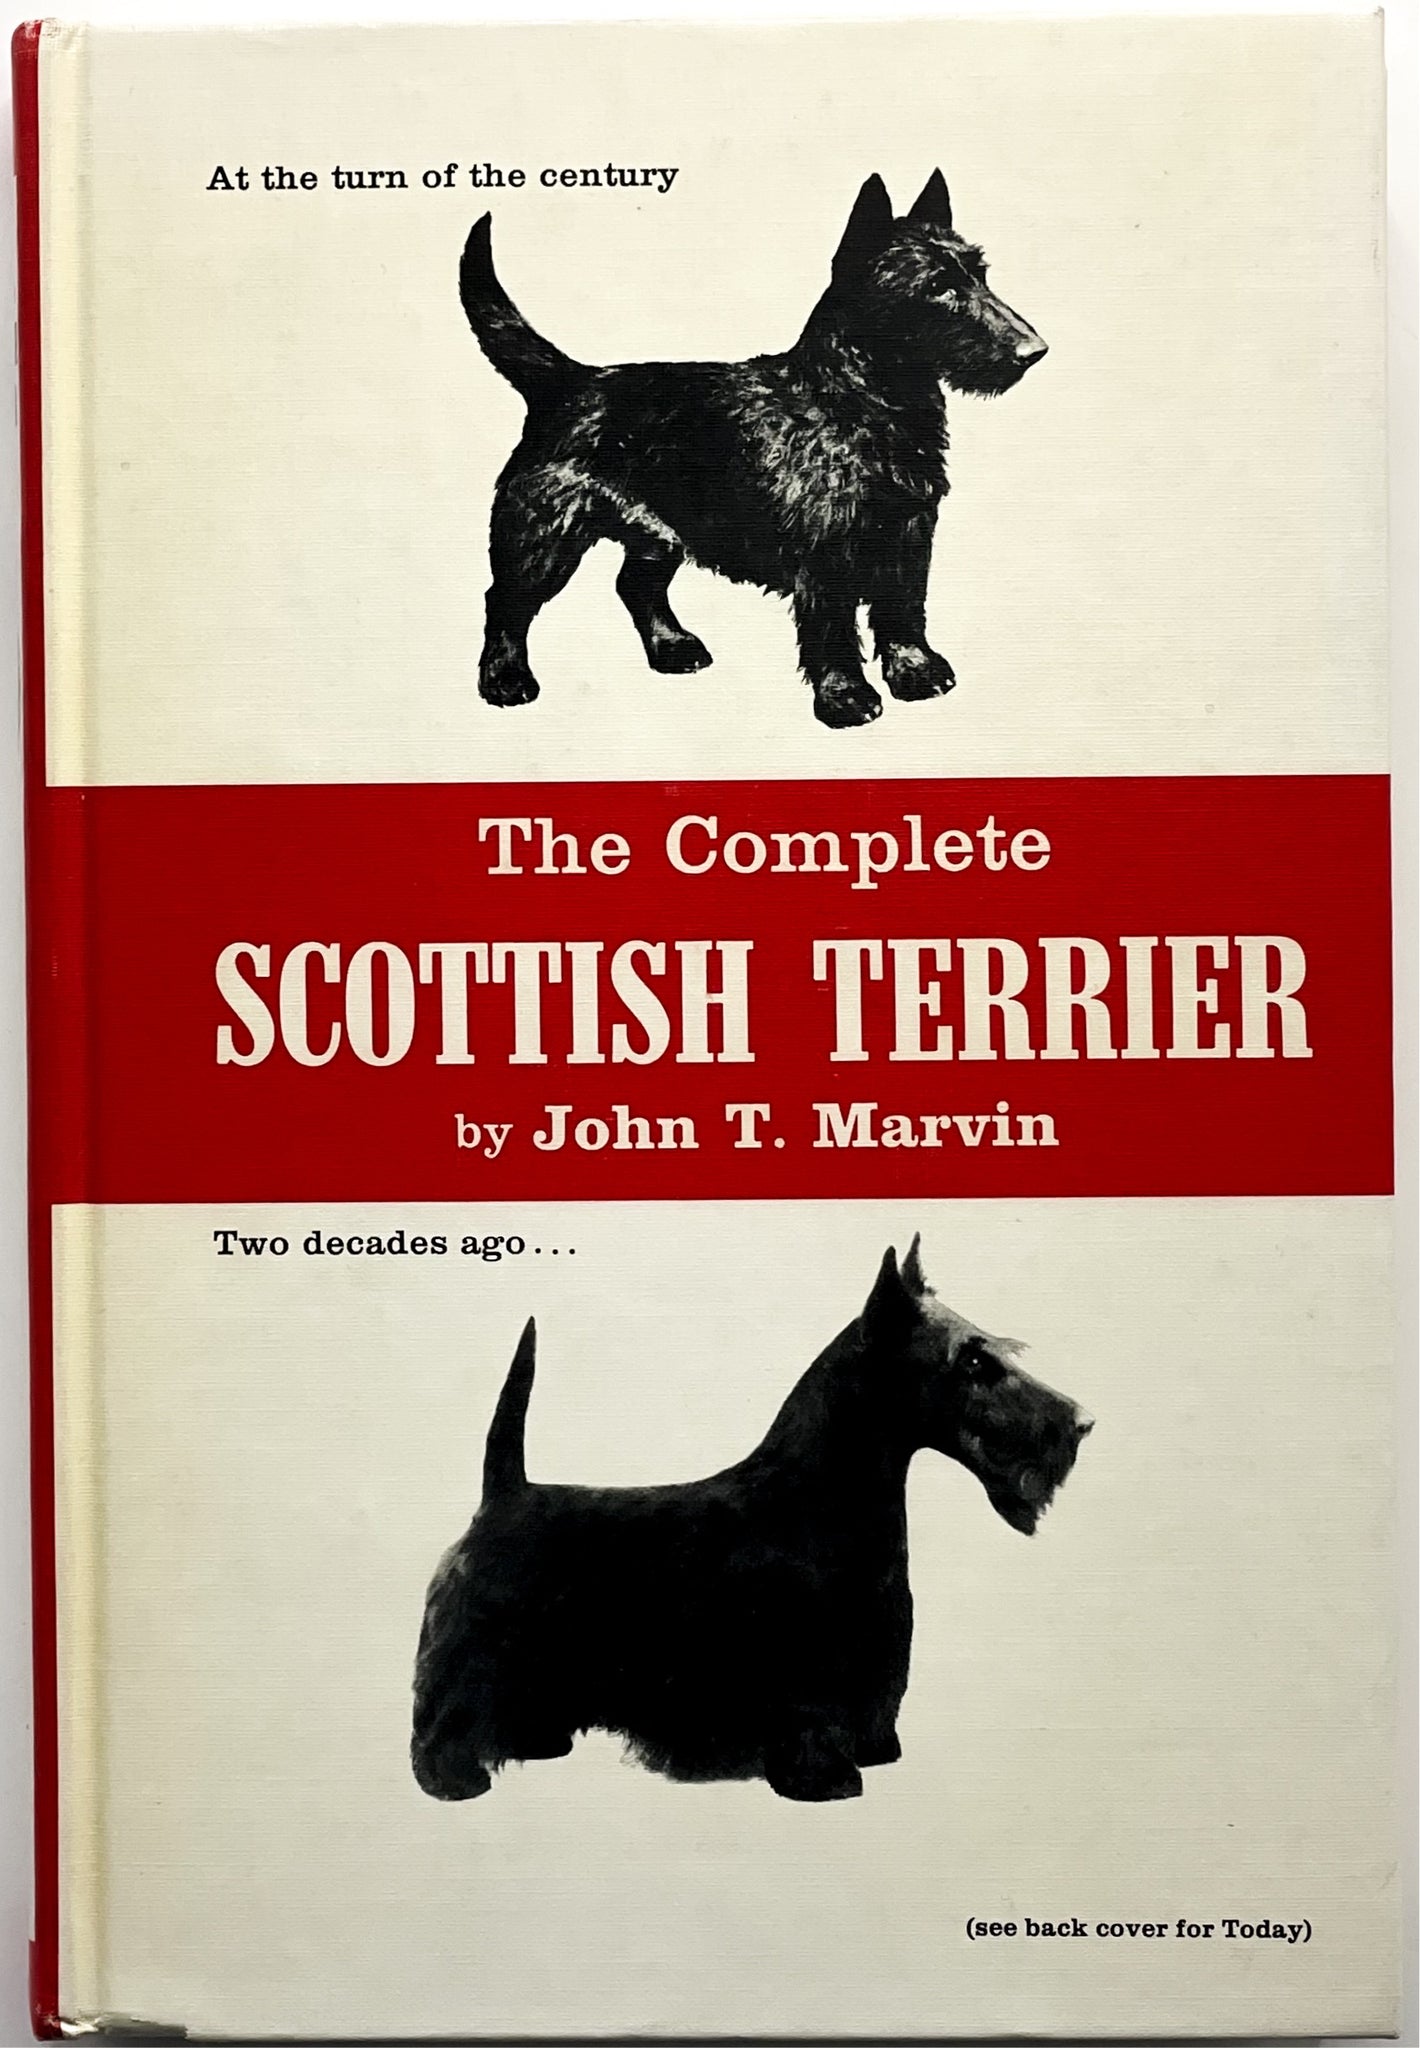 The Complete Scottish Terrier, John T. Marvin